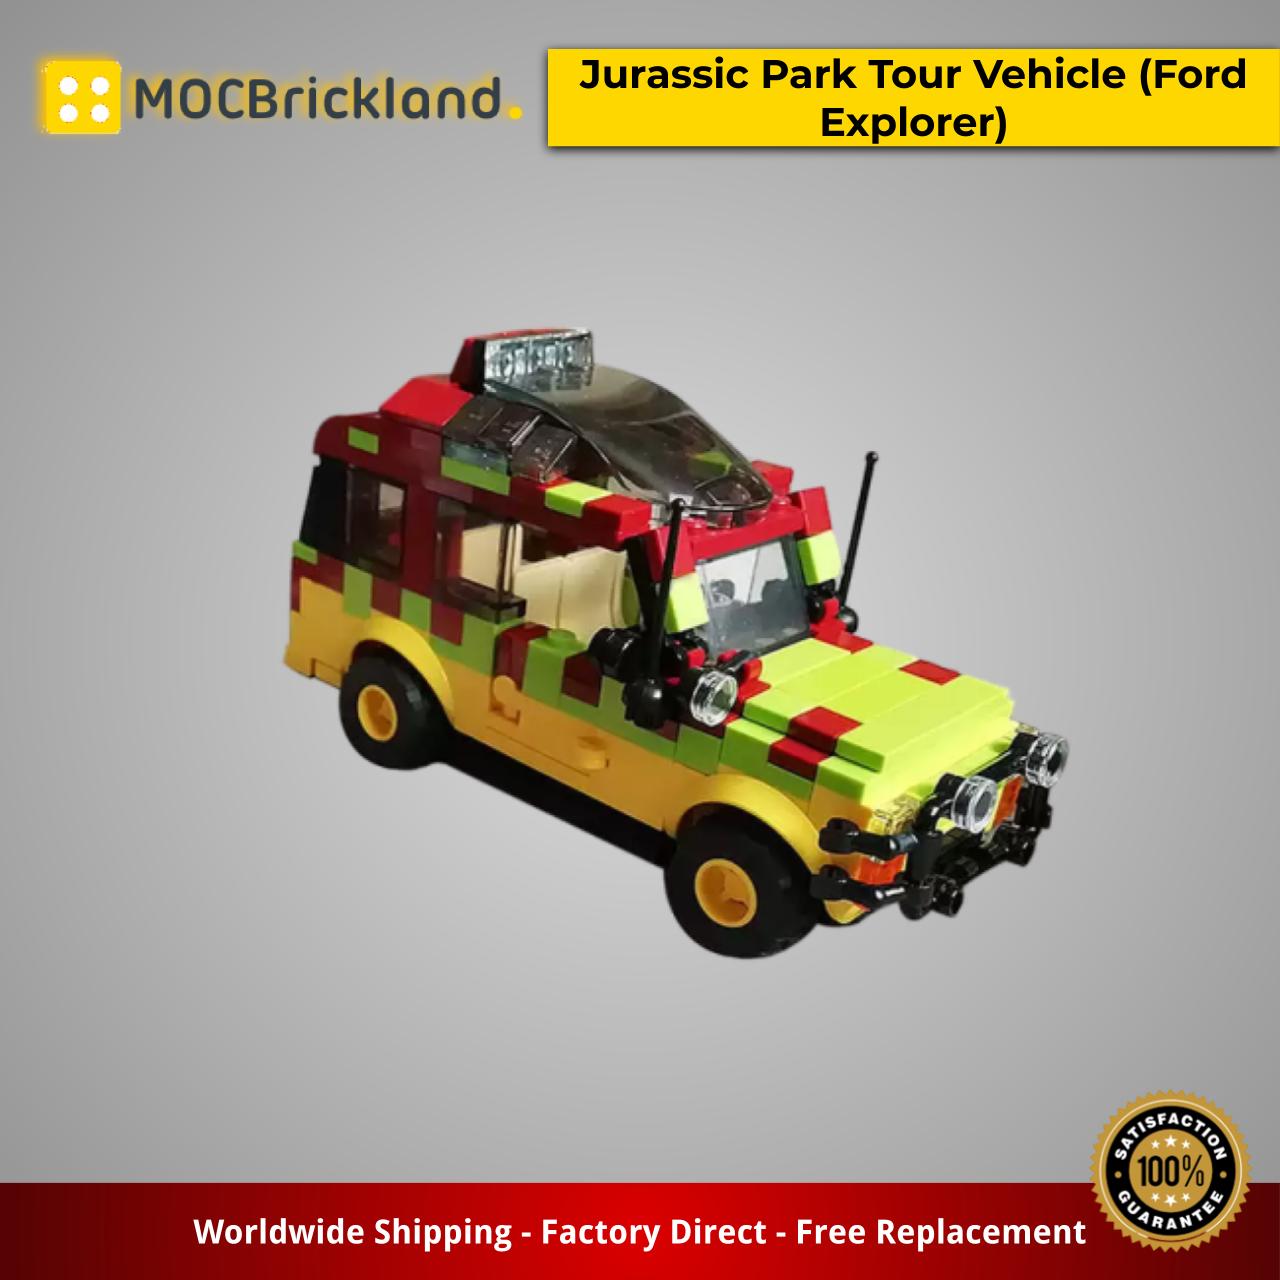 Details about   Jurassic Park Tour Vehicle Ford Explorer Toy BrickBuilding Block Set Camouflage